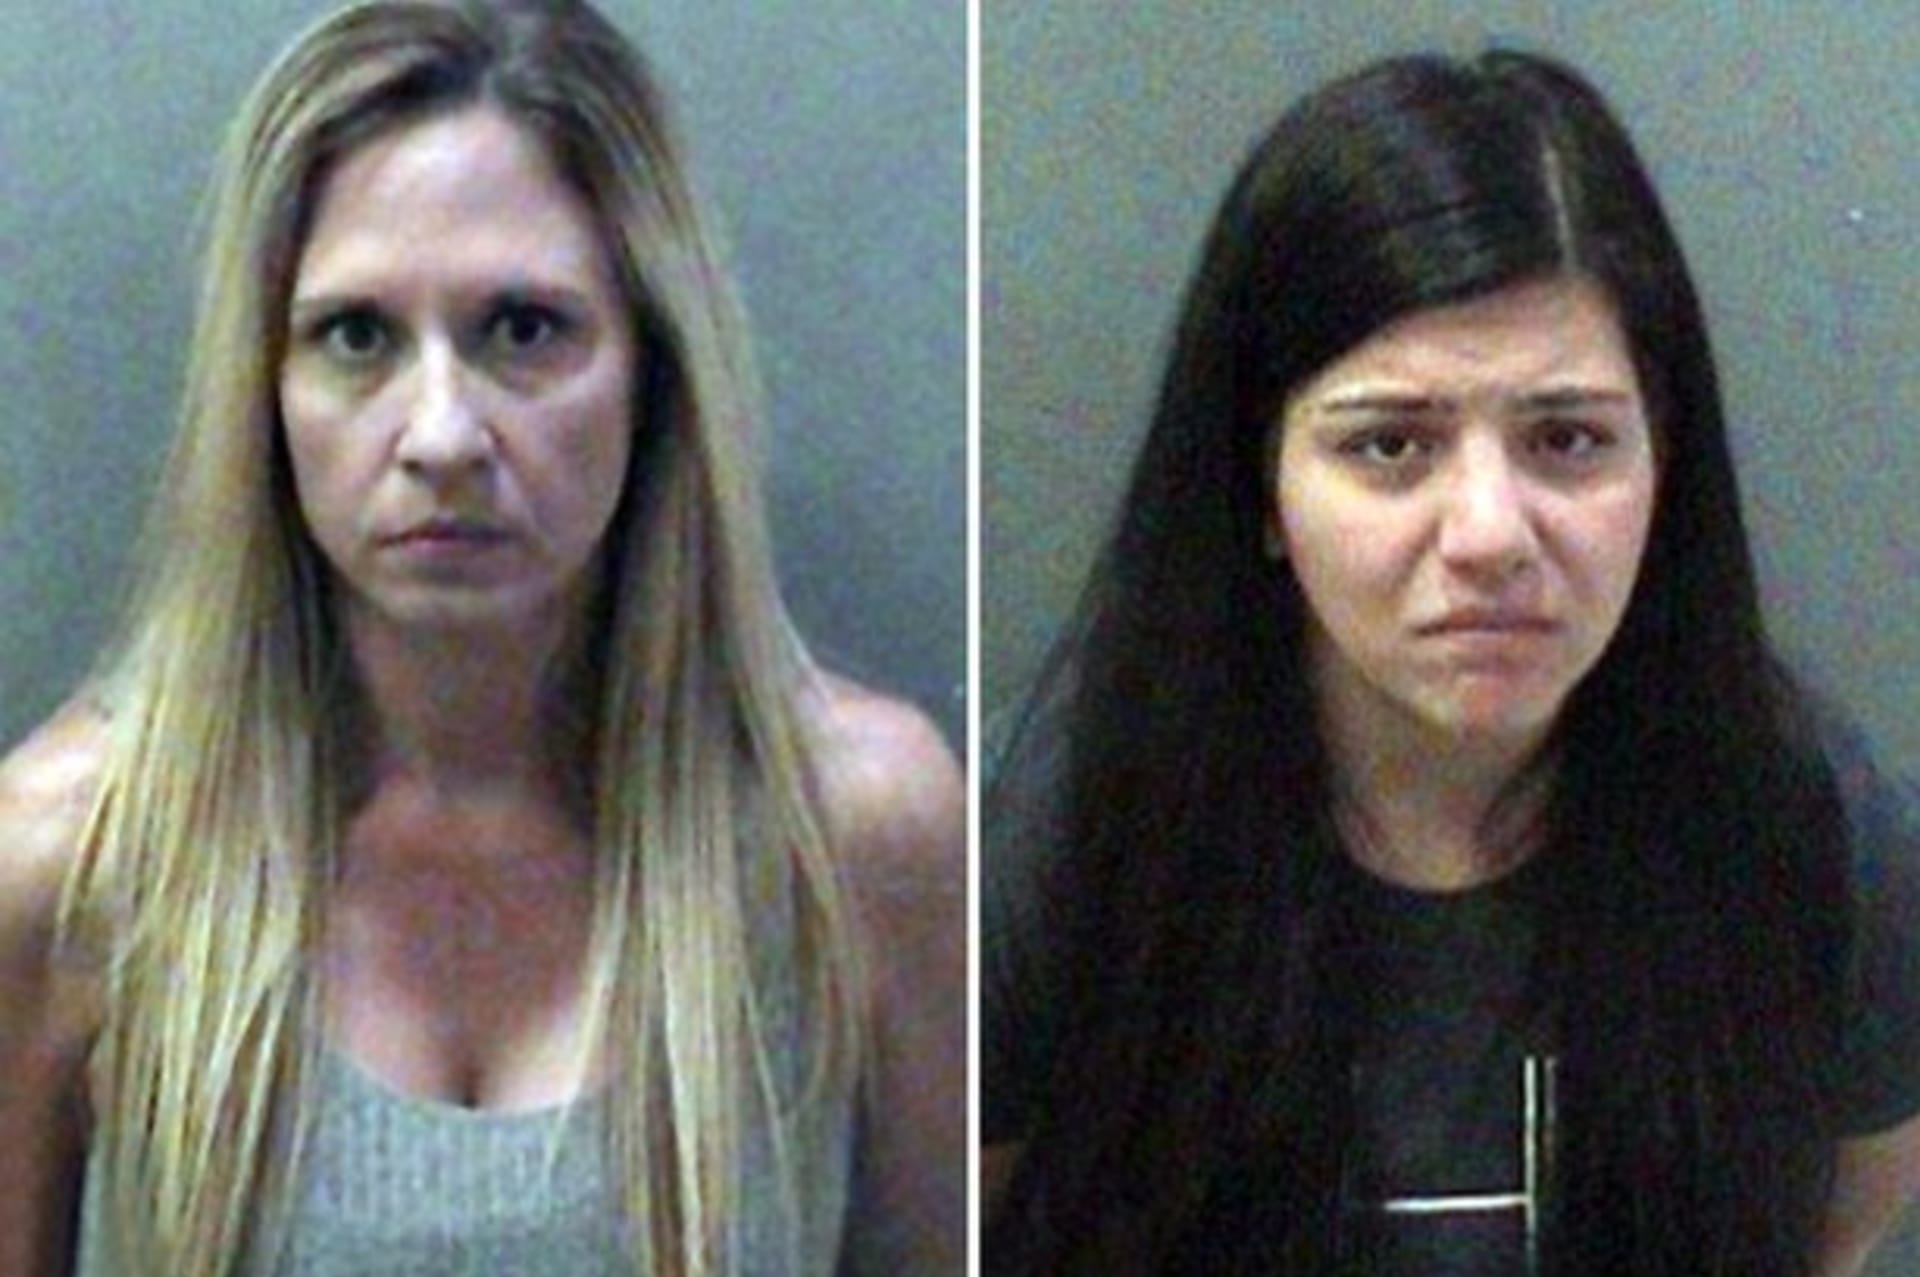 Učitelky Melody Lippert (38) a Michelle Ghirelli (30) čelí obvinění ze sexuálního styku se studenty